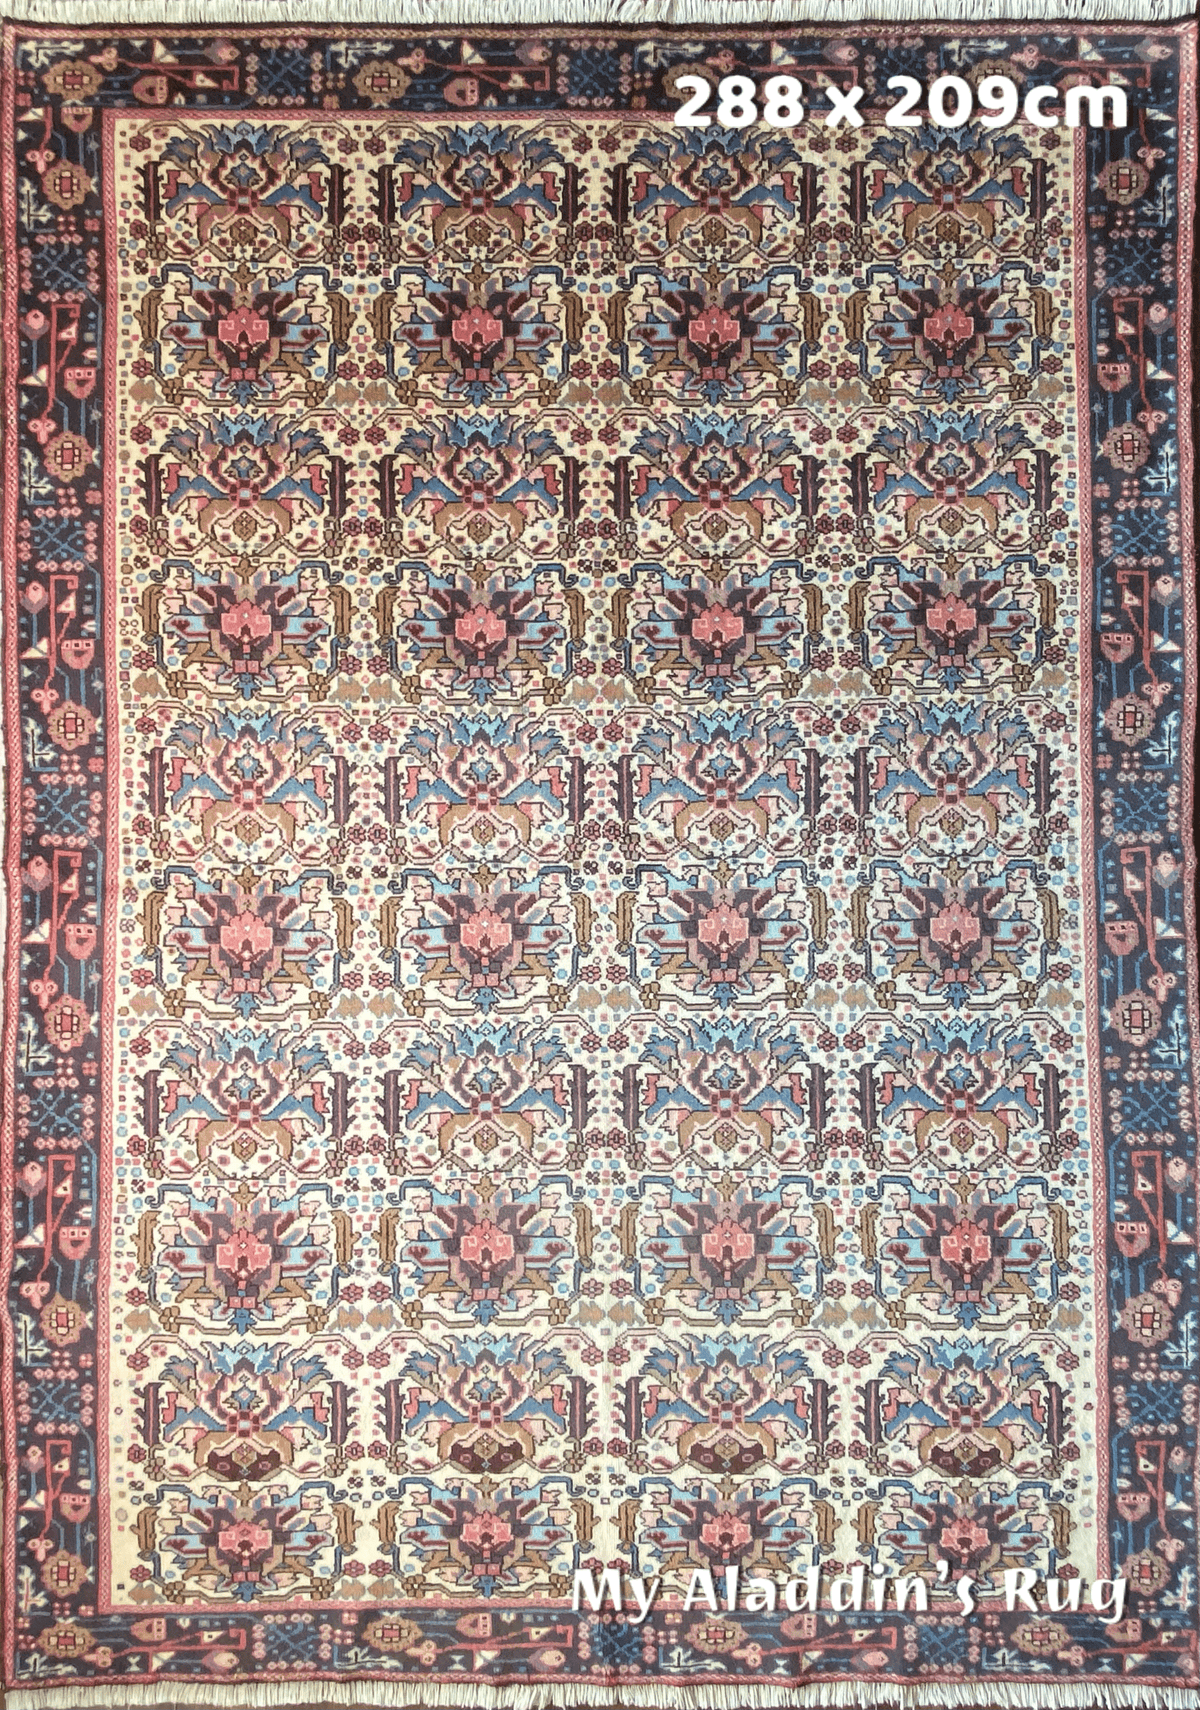 ヴィンテージ ガラジェ産 ペルシャ絨毯 181.5×159cm